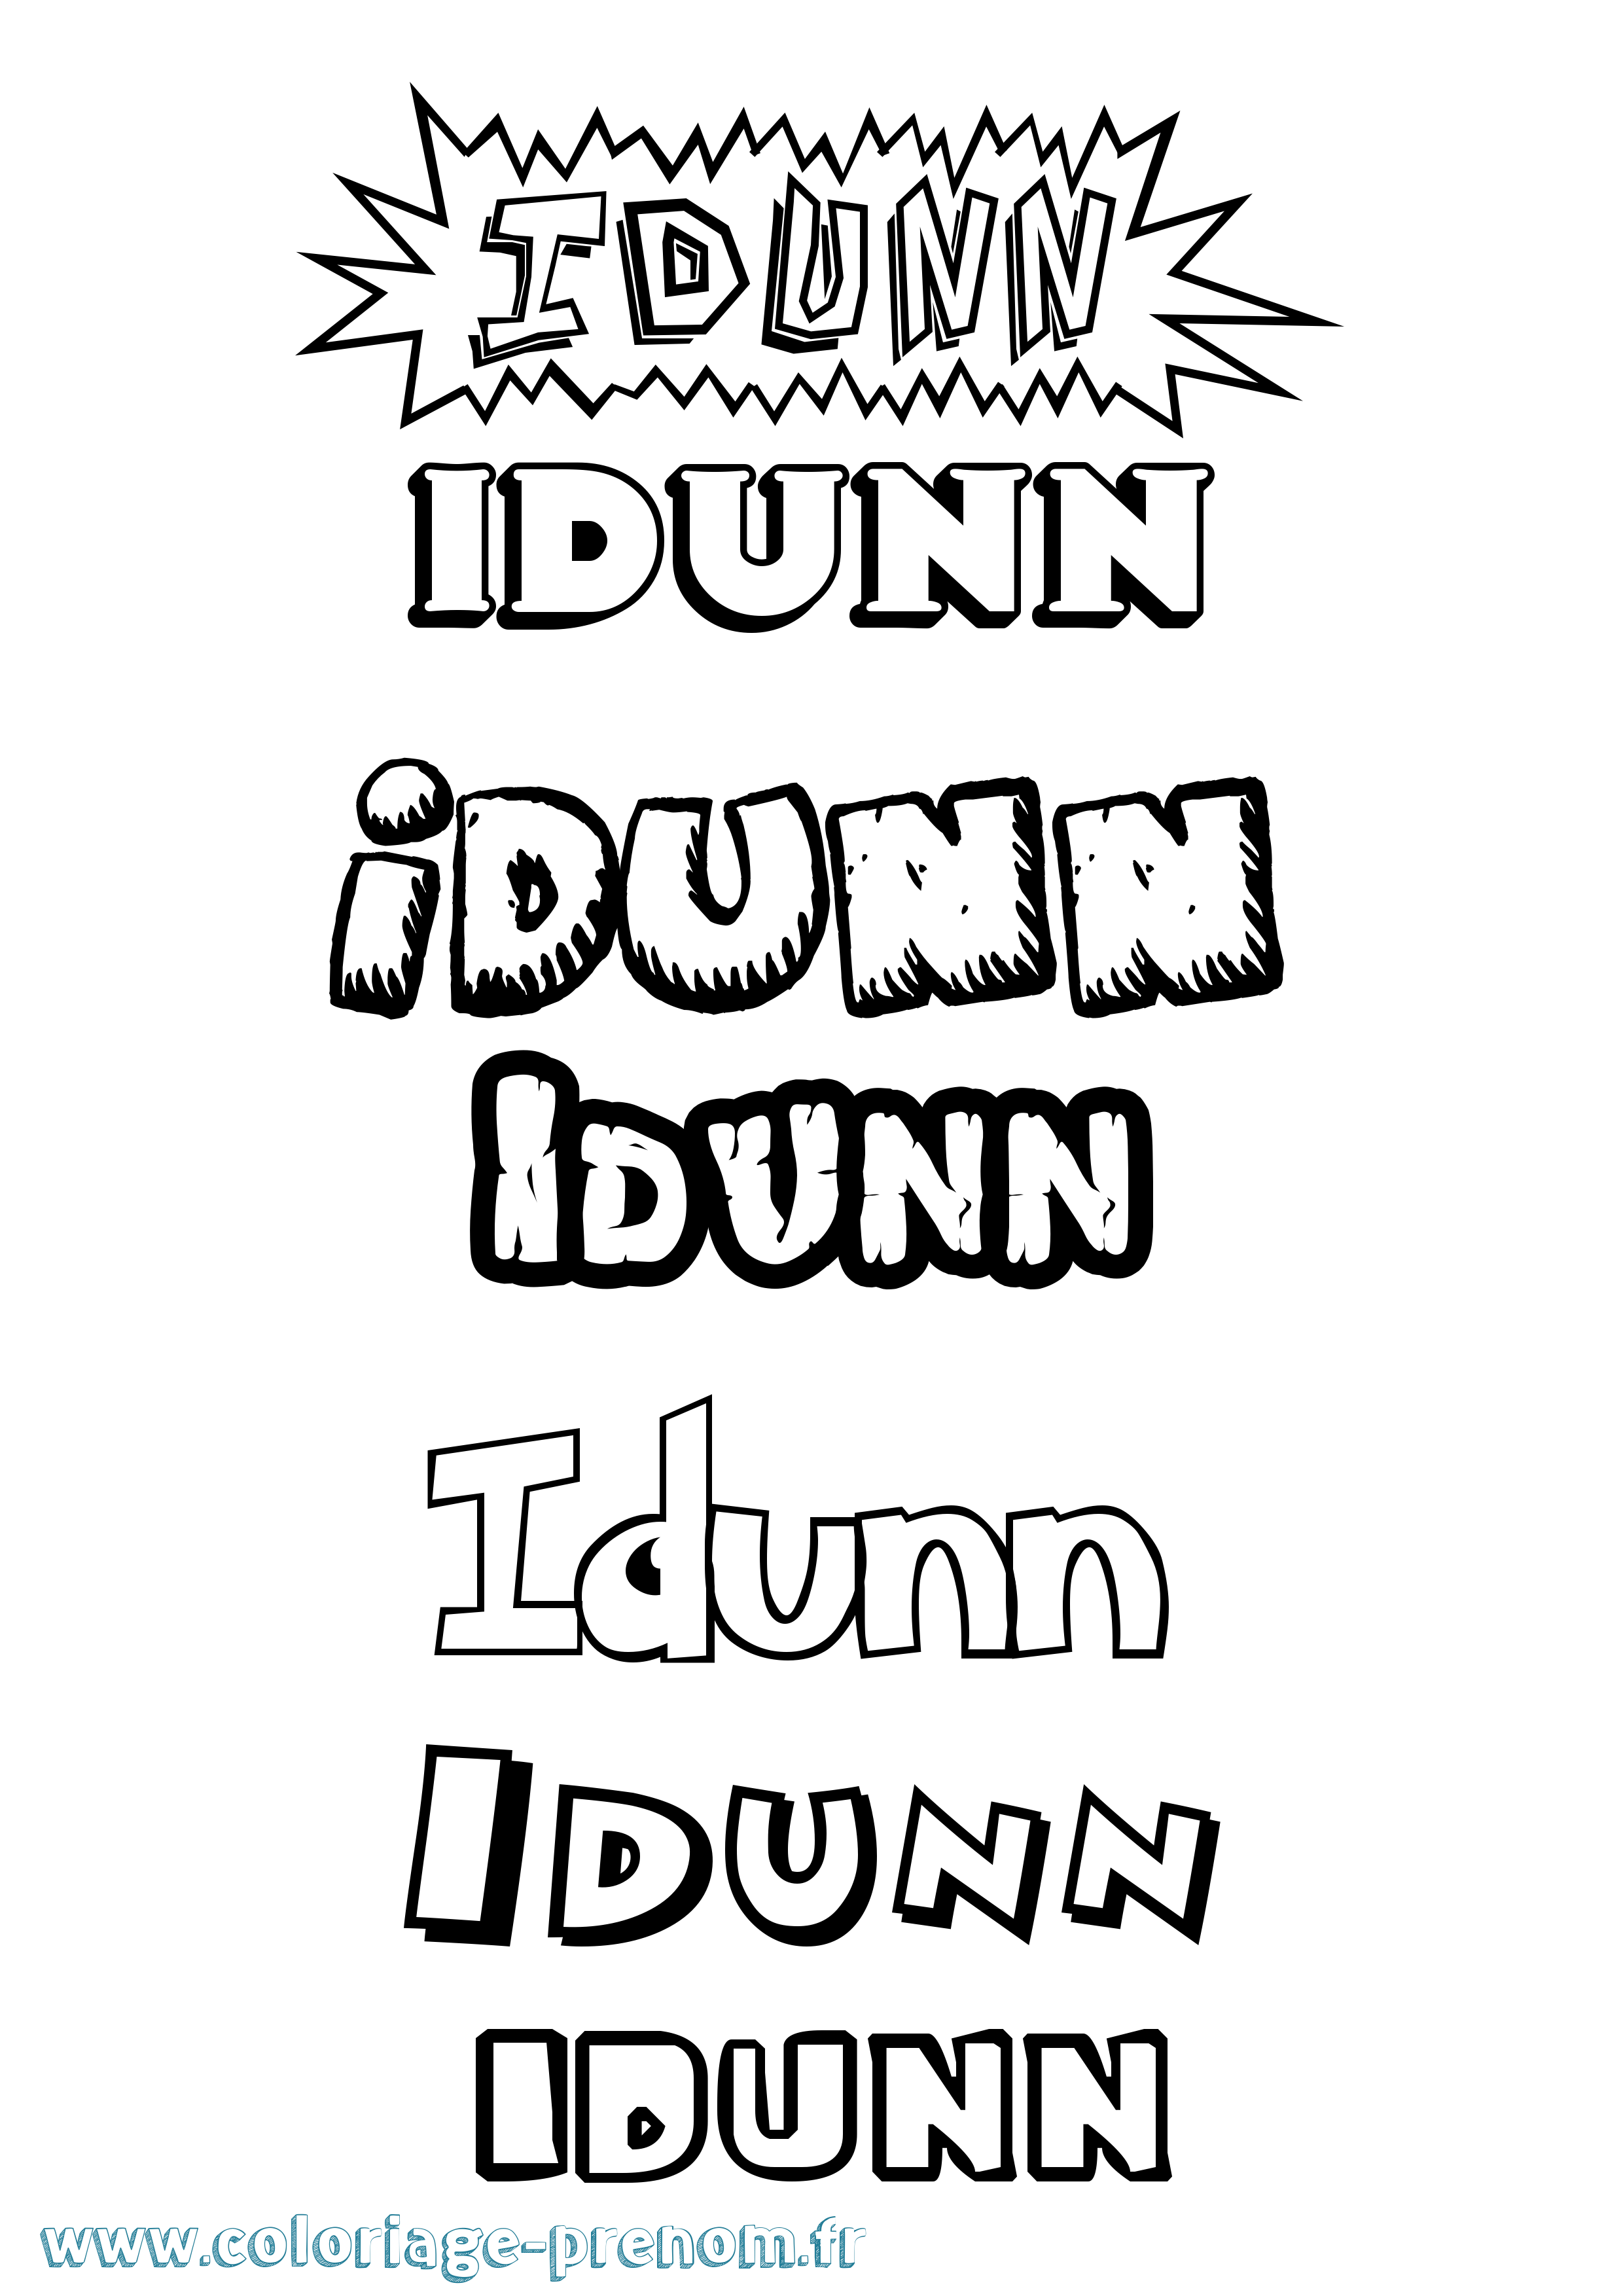 Coloriage prénom Idunn Dessin Animé